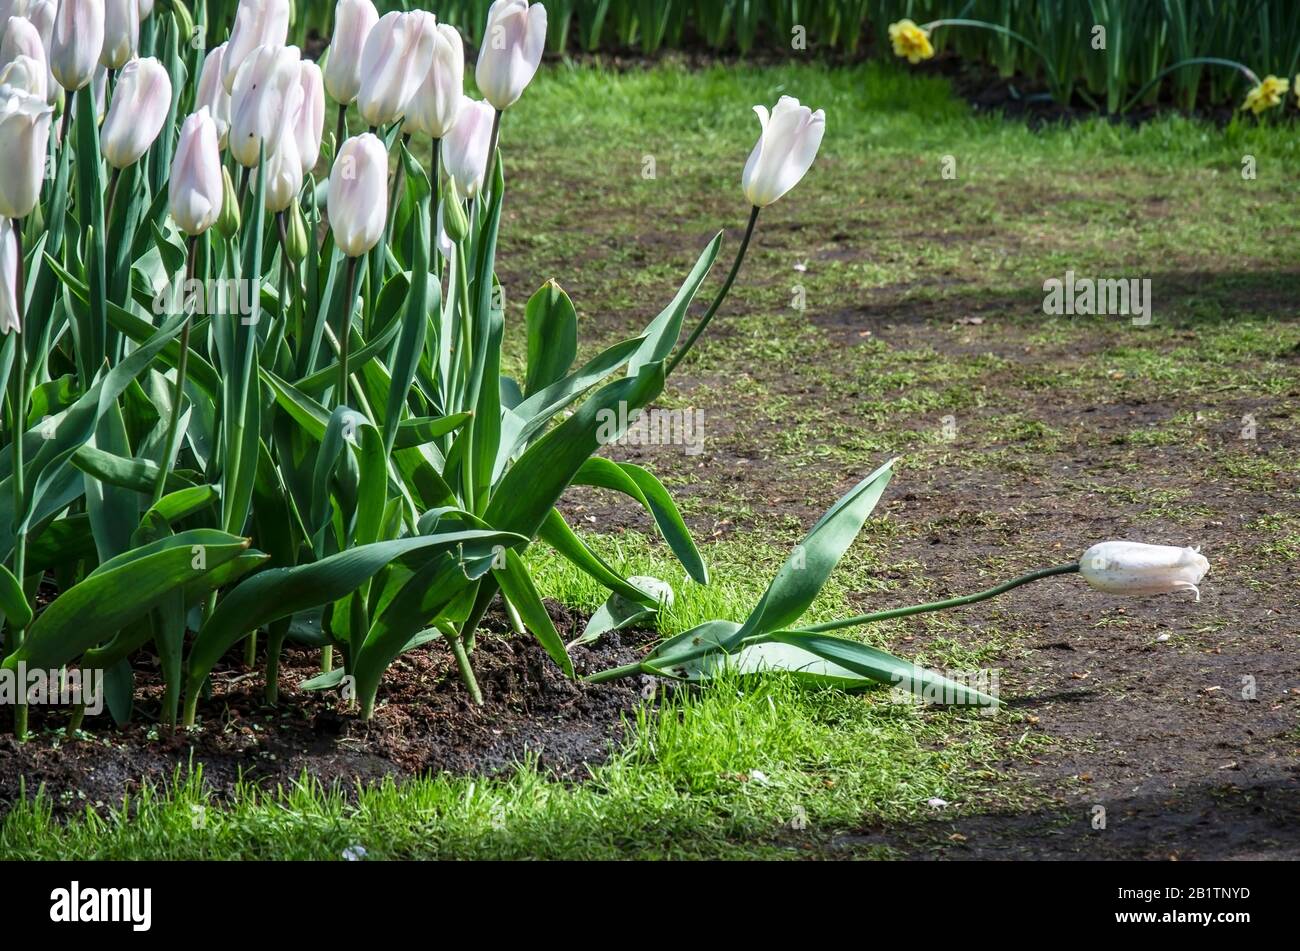 Tulipes poussant dans le jardin. Fleur de tulipe seule tombée près du groupe de tulipes. Fleurs de tulipes blanches. Banque D'Images